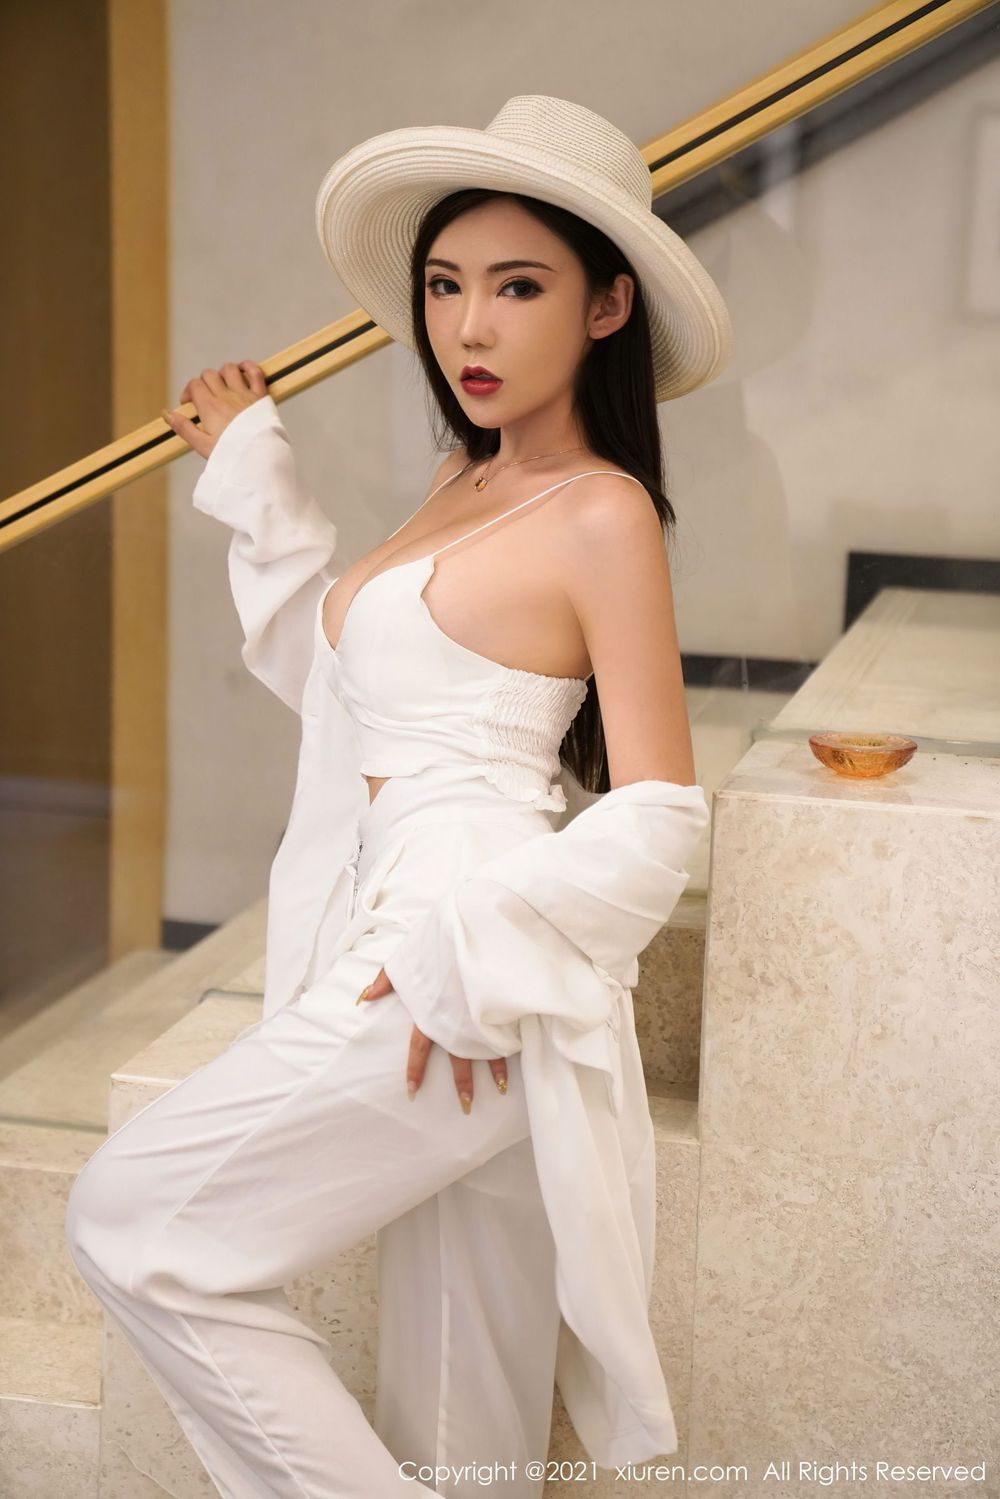 美女模特萌汉药baby白色干练职场OL丝袜系列北京旅拍